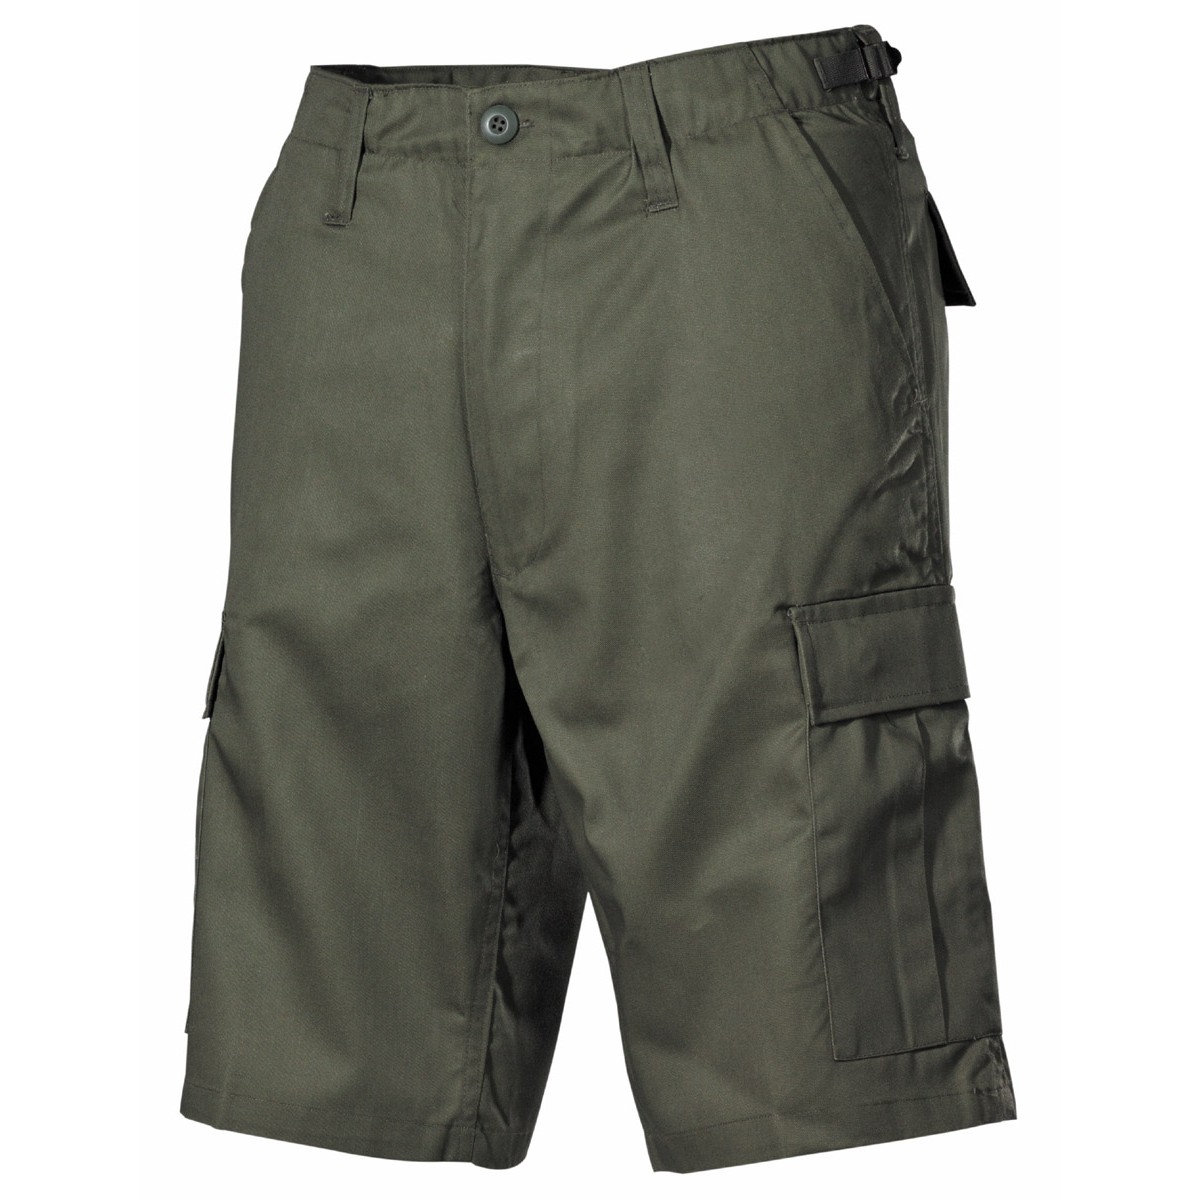 Krátké kalhoty MFH US BDU Bermuda - olivové, XL